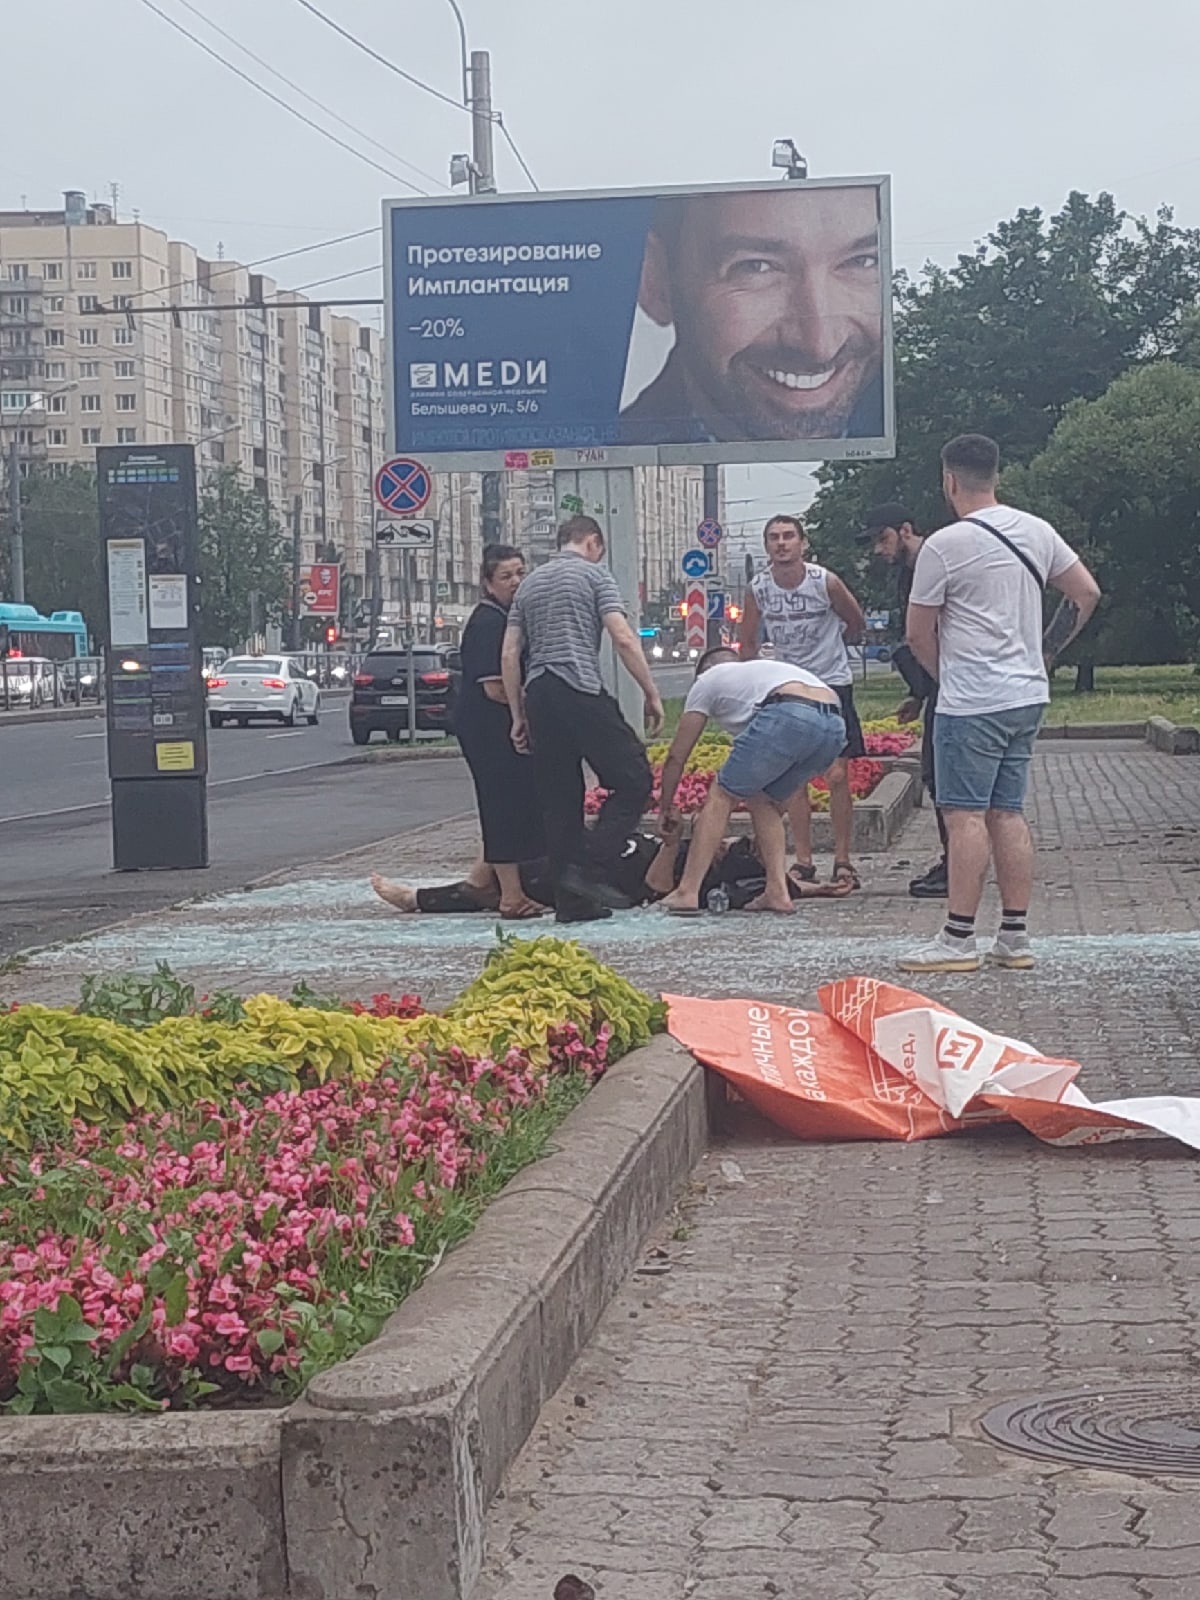 В Санкт-Петербурге упавшая из-за непогоды остановка сломала плечо женщине